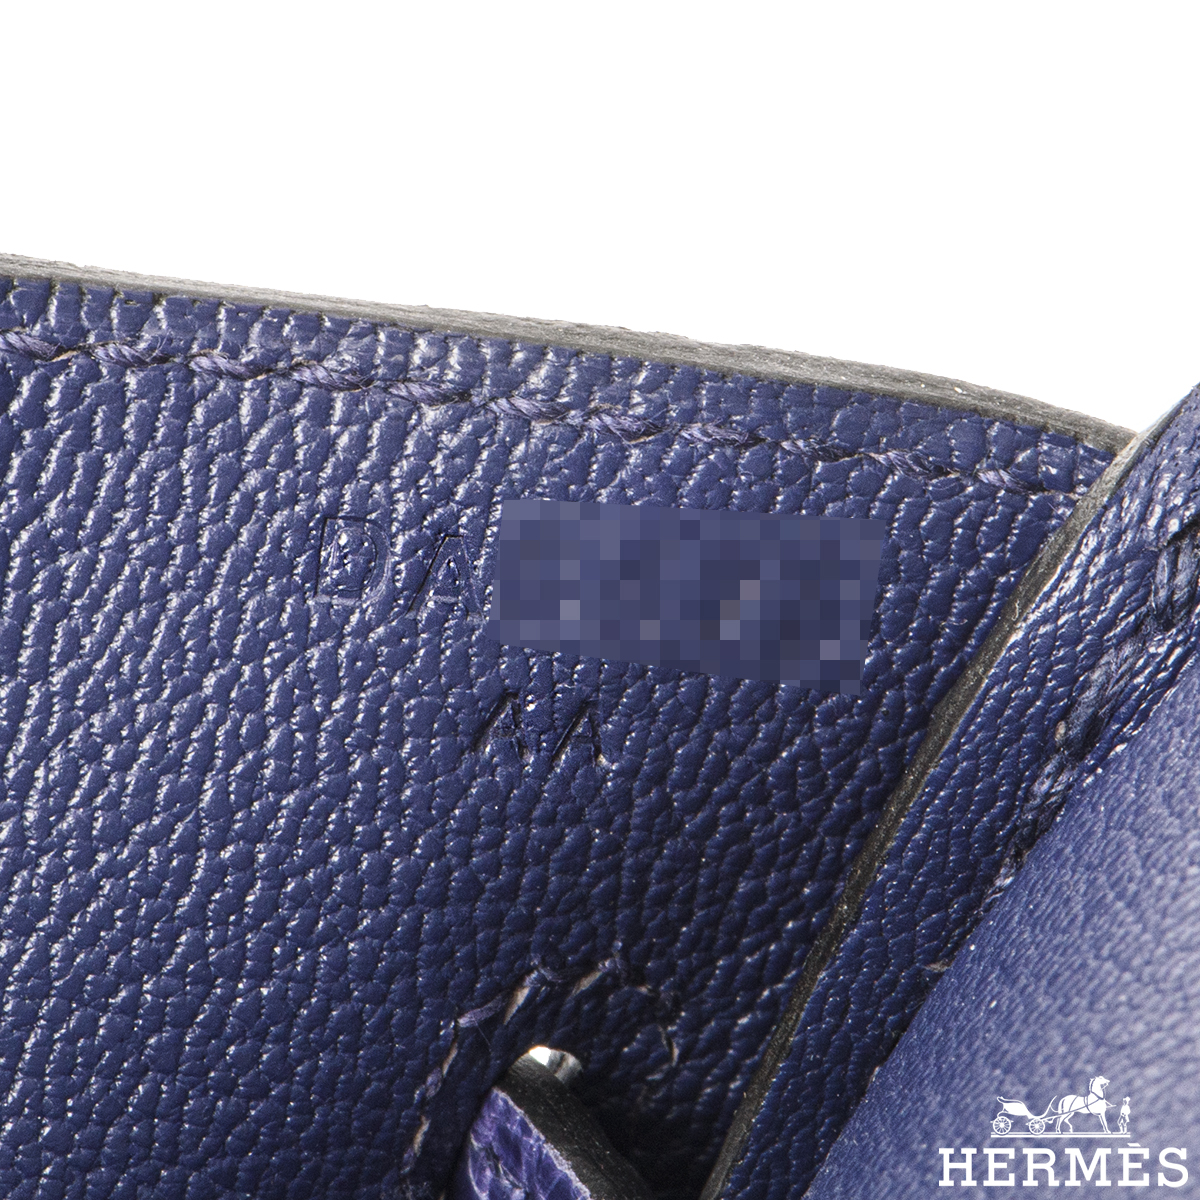 Hermès Birkin 30 HSS Togo Blue Encre / Gris Mouette